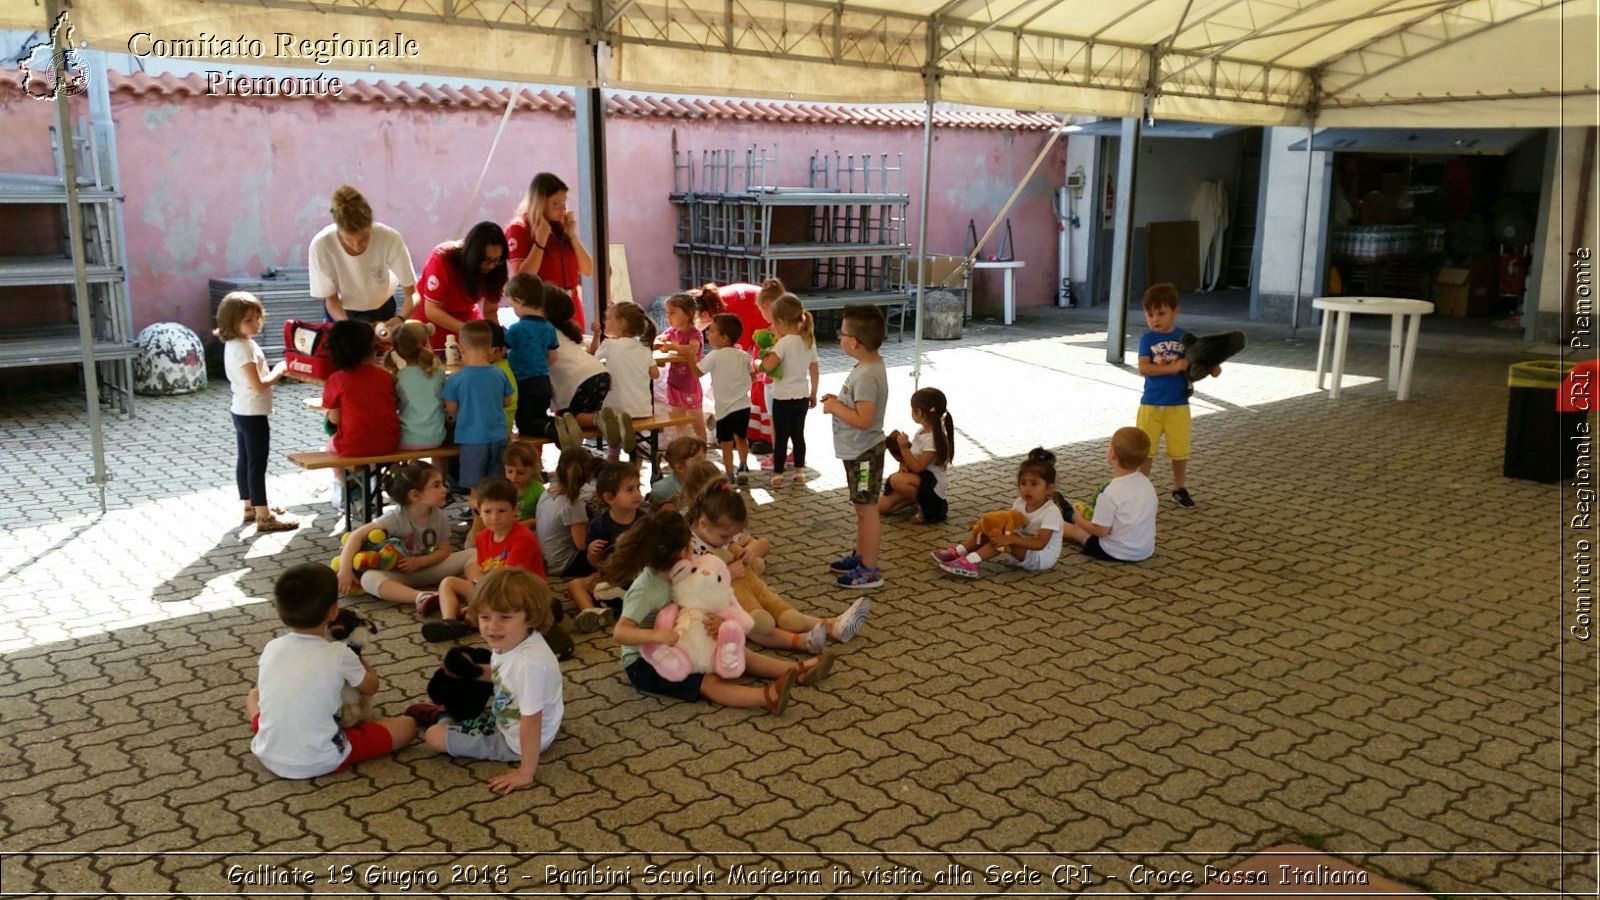 Galliate 19 Giugno 2018 - Bambini Scuola Materna in visita alla Sede CRI - Croce Rossa Italiana- Comitato Regionale del Piemonte